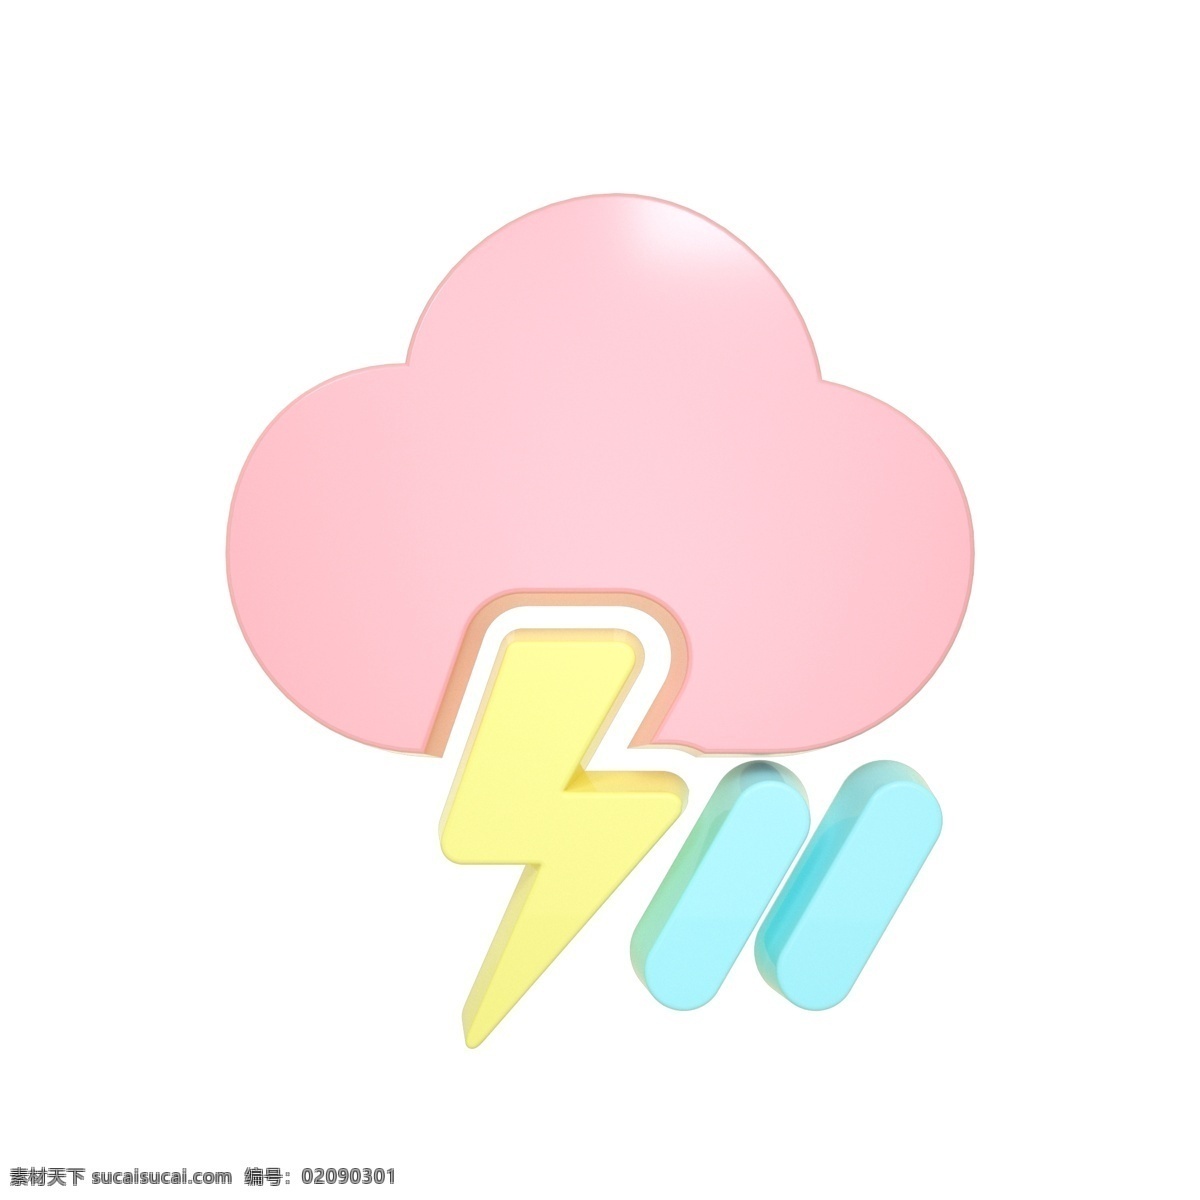 柔 色 天气 类 立体 图标 雷暴雨 c4d 3d 柔色 粉色 天气类图标 通用图标装饰 可爱 常用